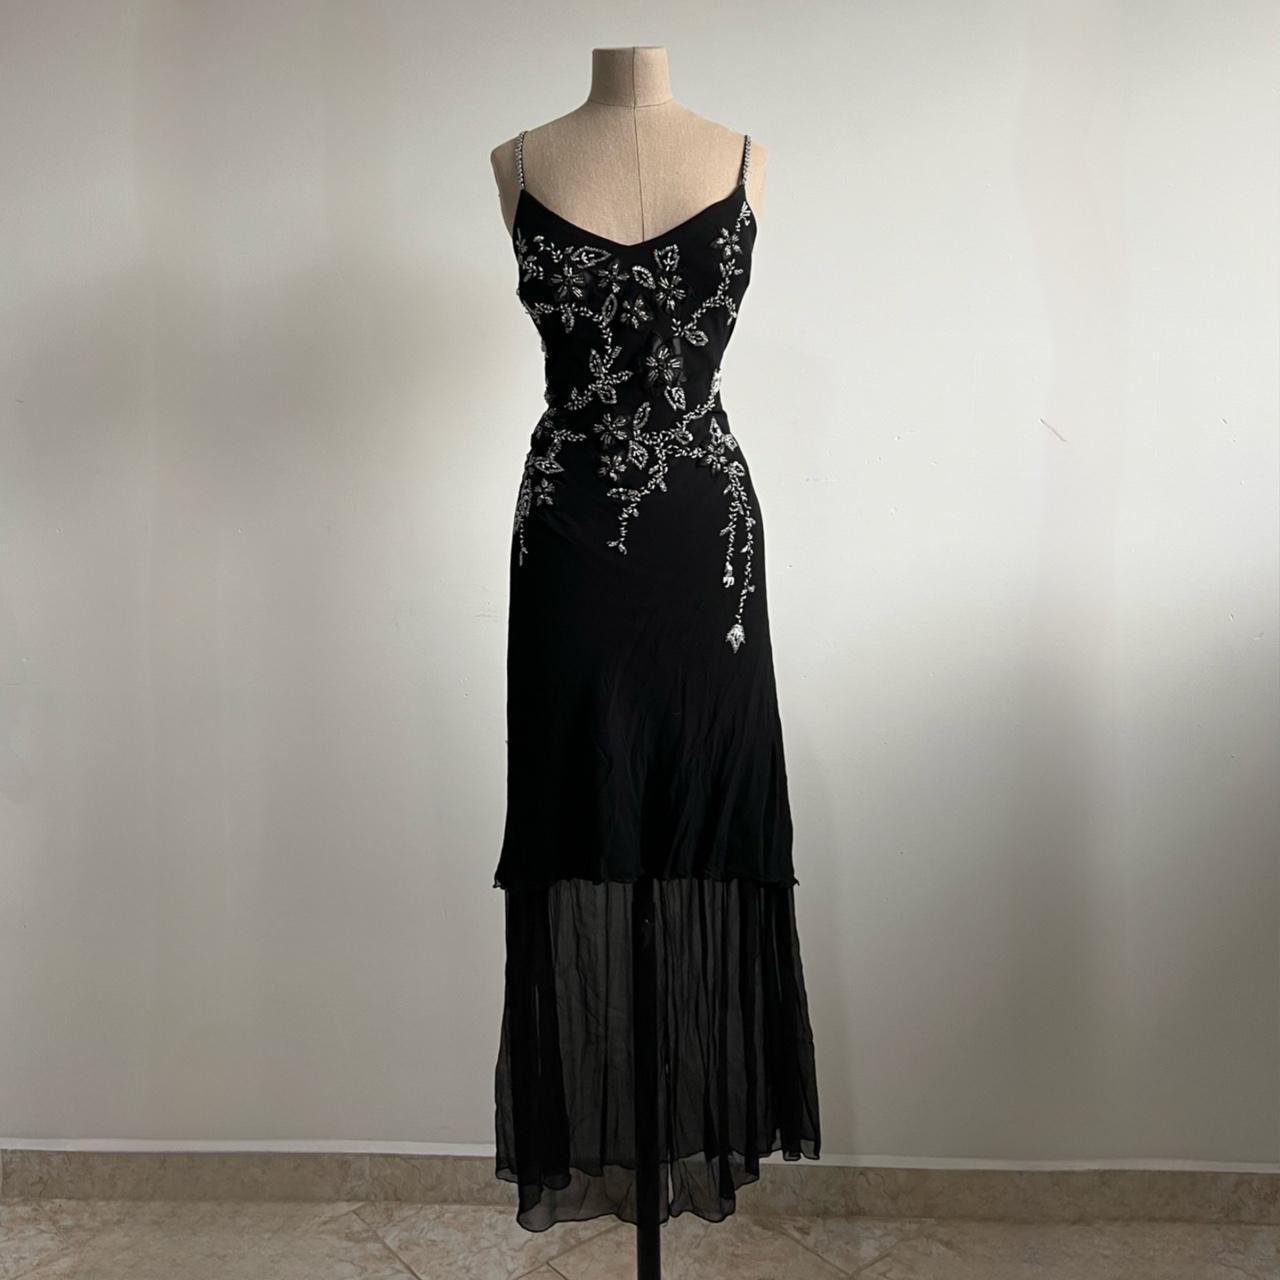 90s vintage black floral beaded gown prom dress ☆... - Depop